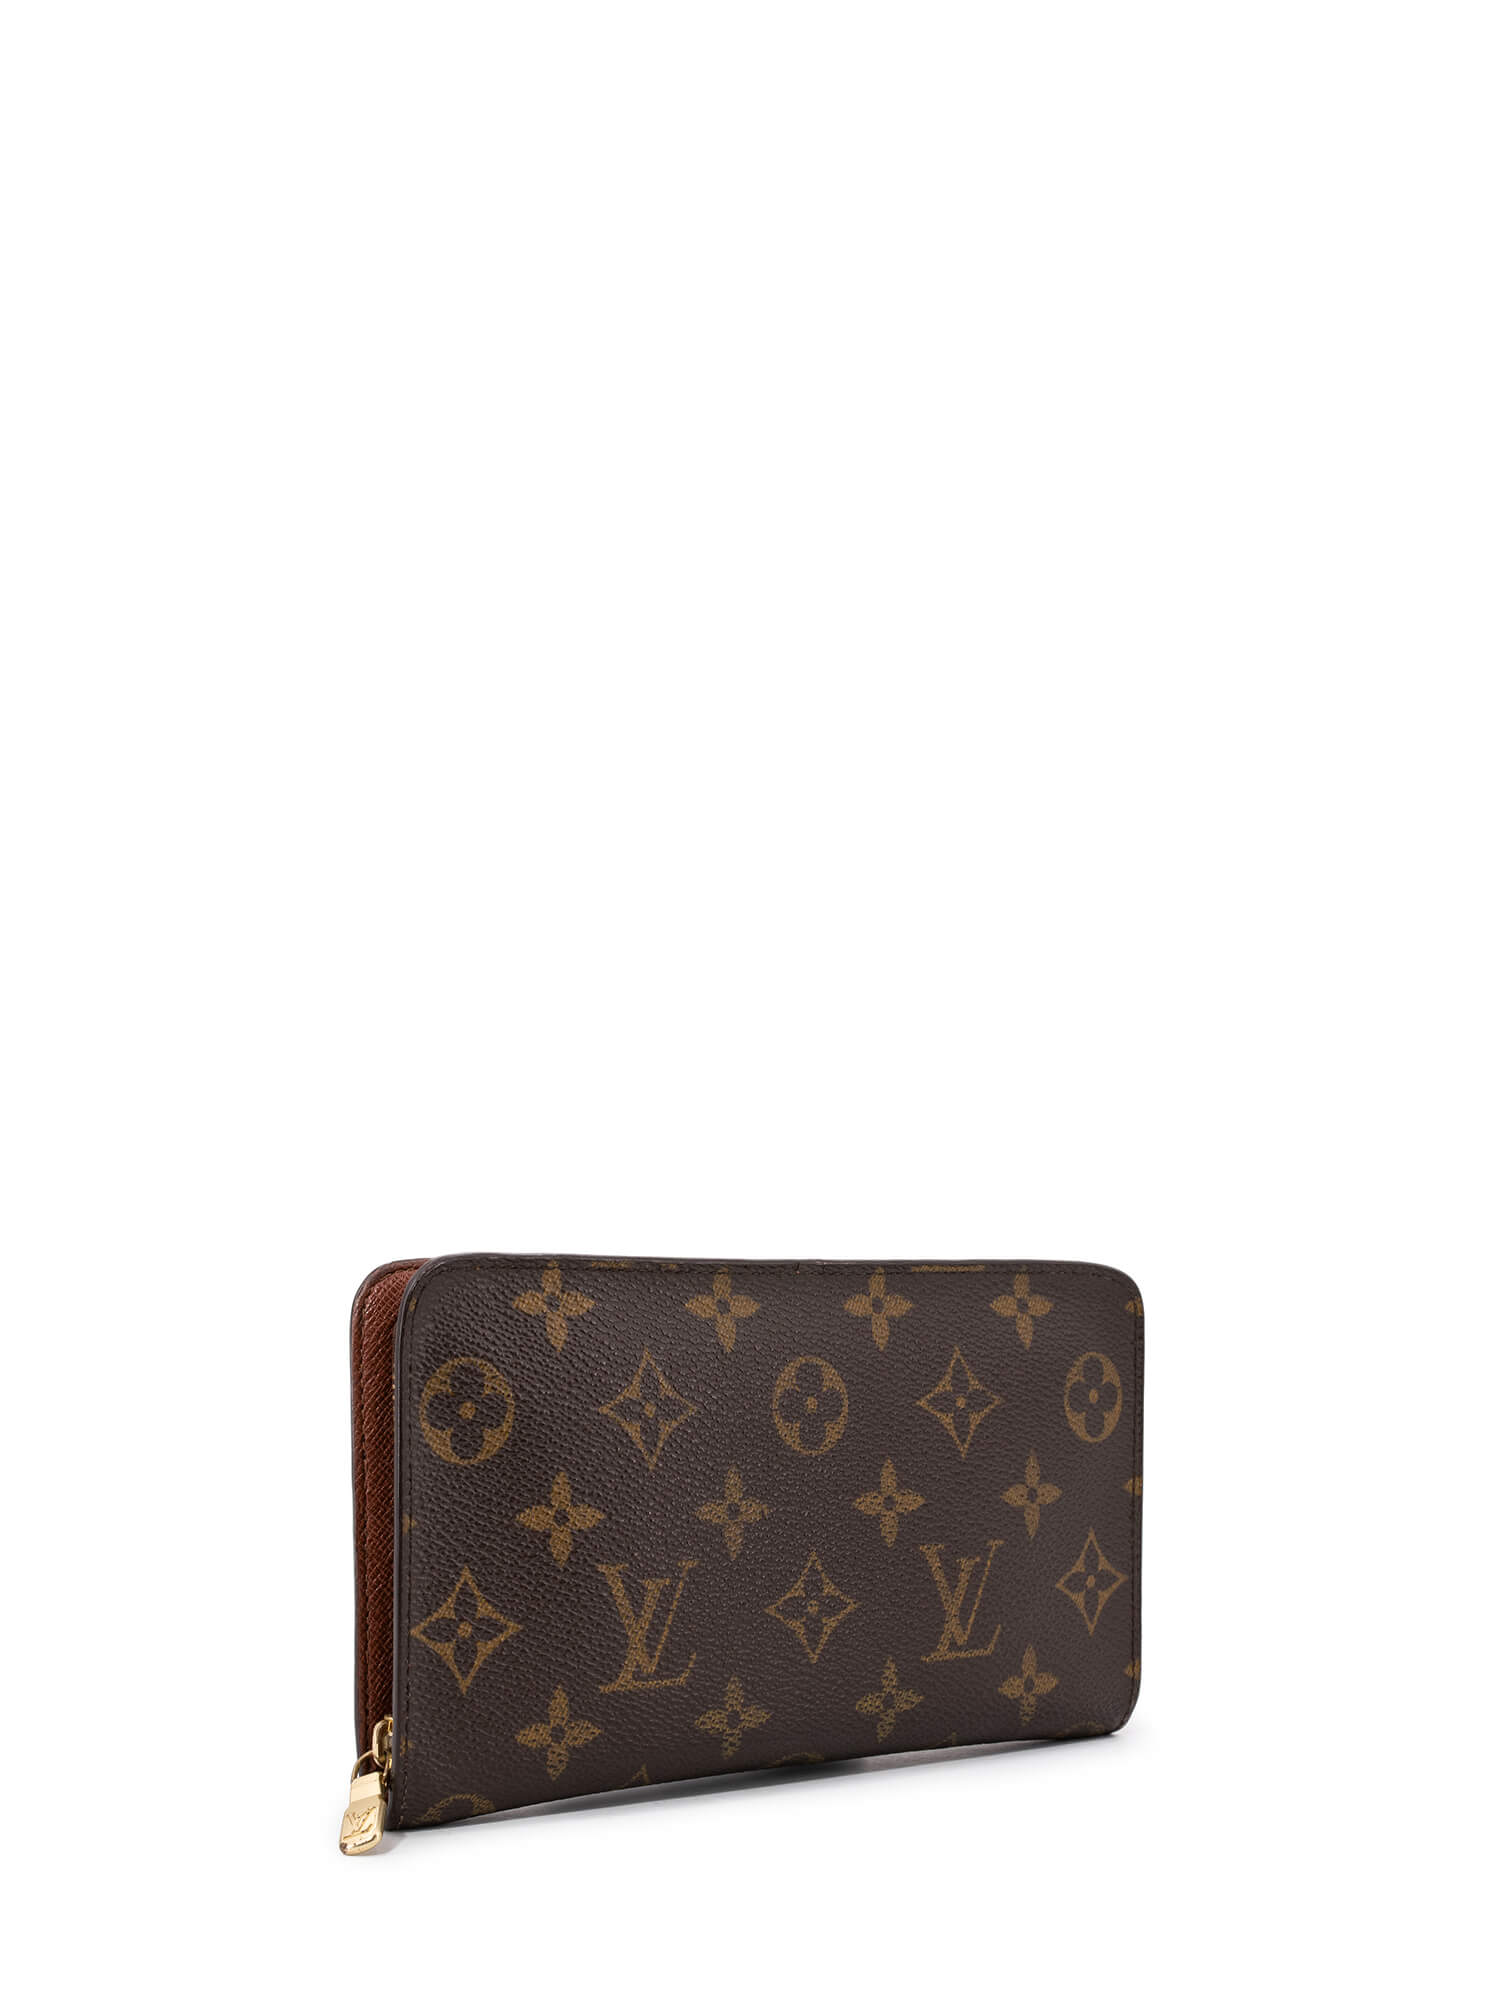 Louis Vuitton Monogram Porte-Monnaie Zippy Wallet Brown-designer resale